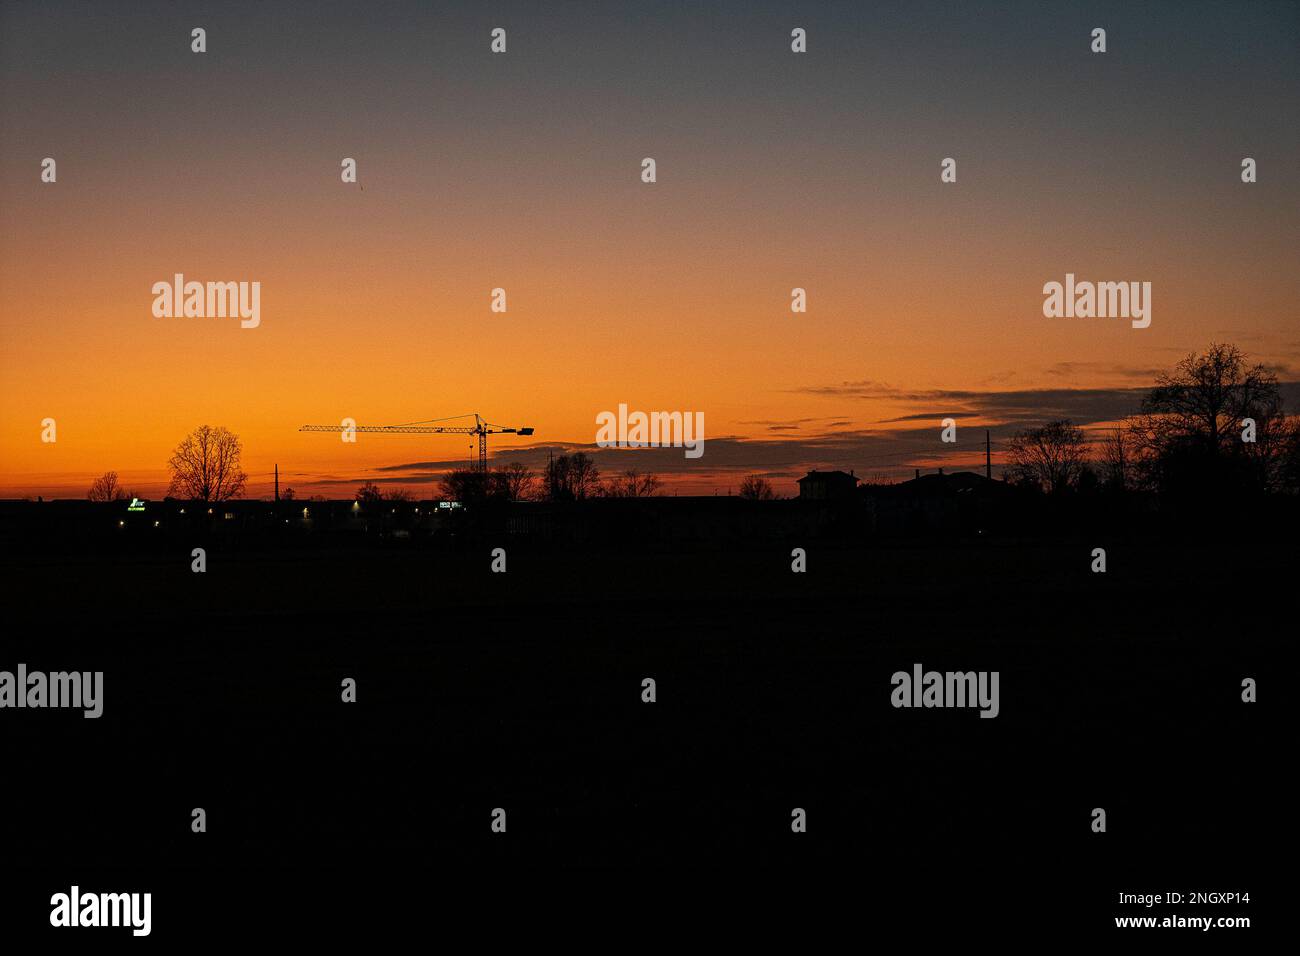 Ora d'oro: Guarda il tramonto mozzafiato, una fine mozzafiato della giornata. Tramonto invernale a Lodi, Italia Foto Stock